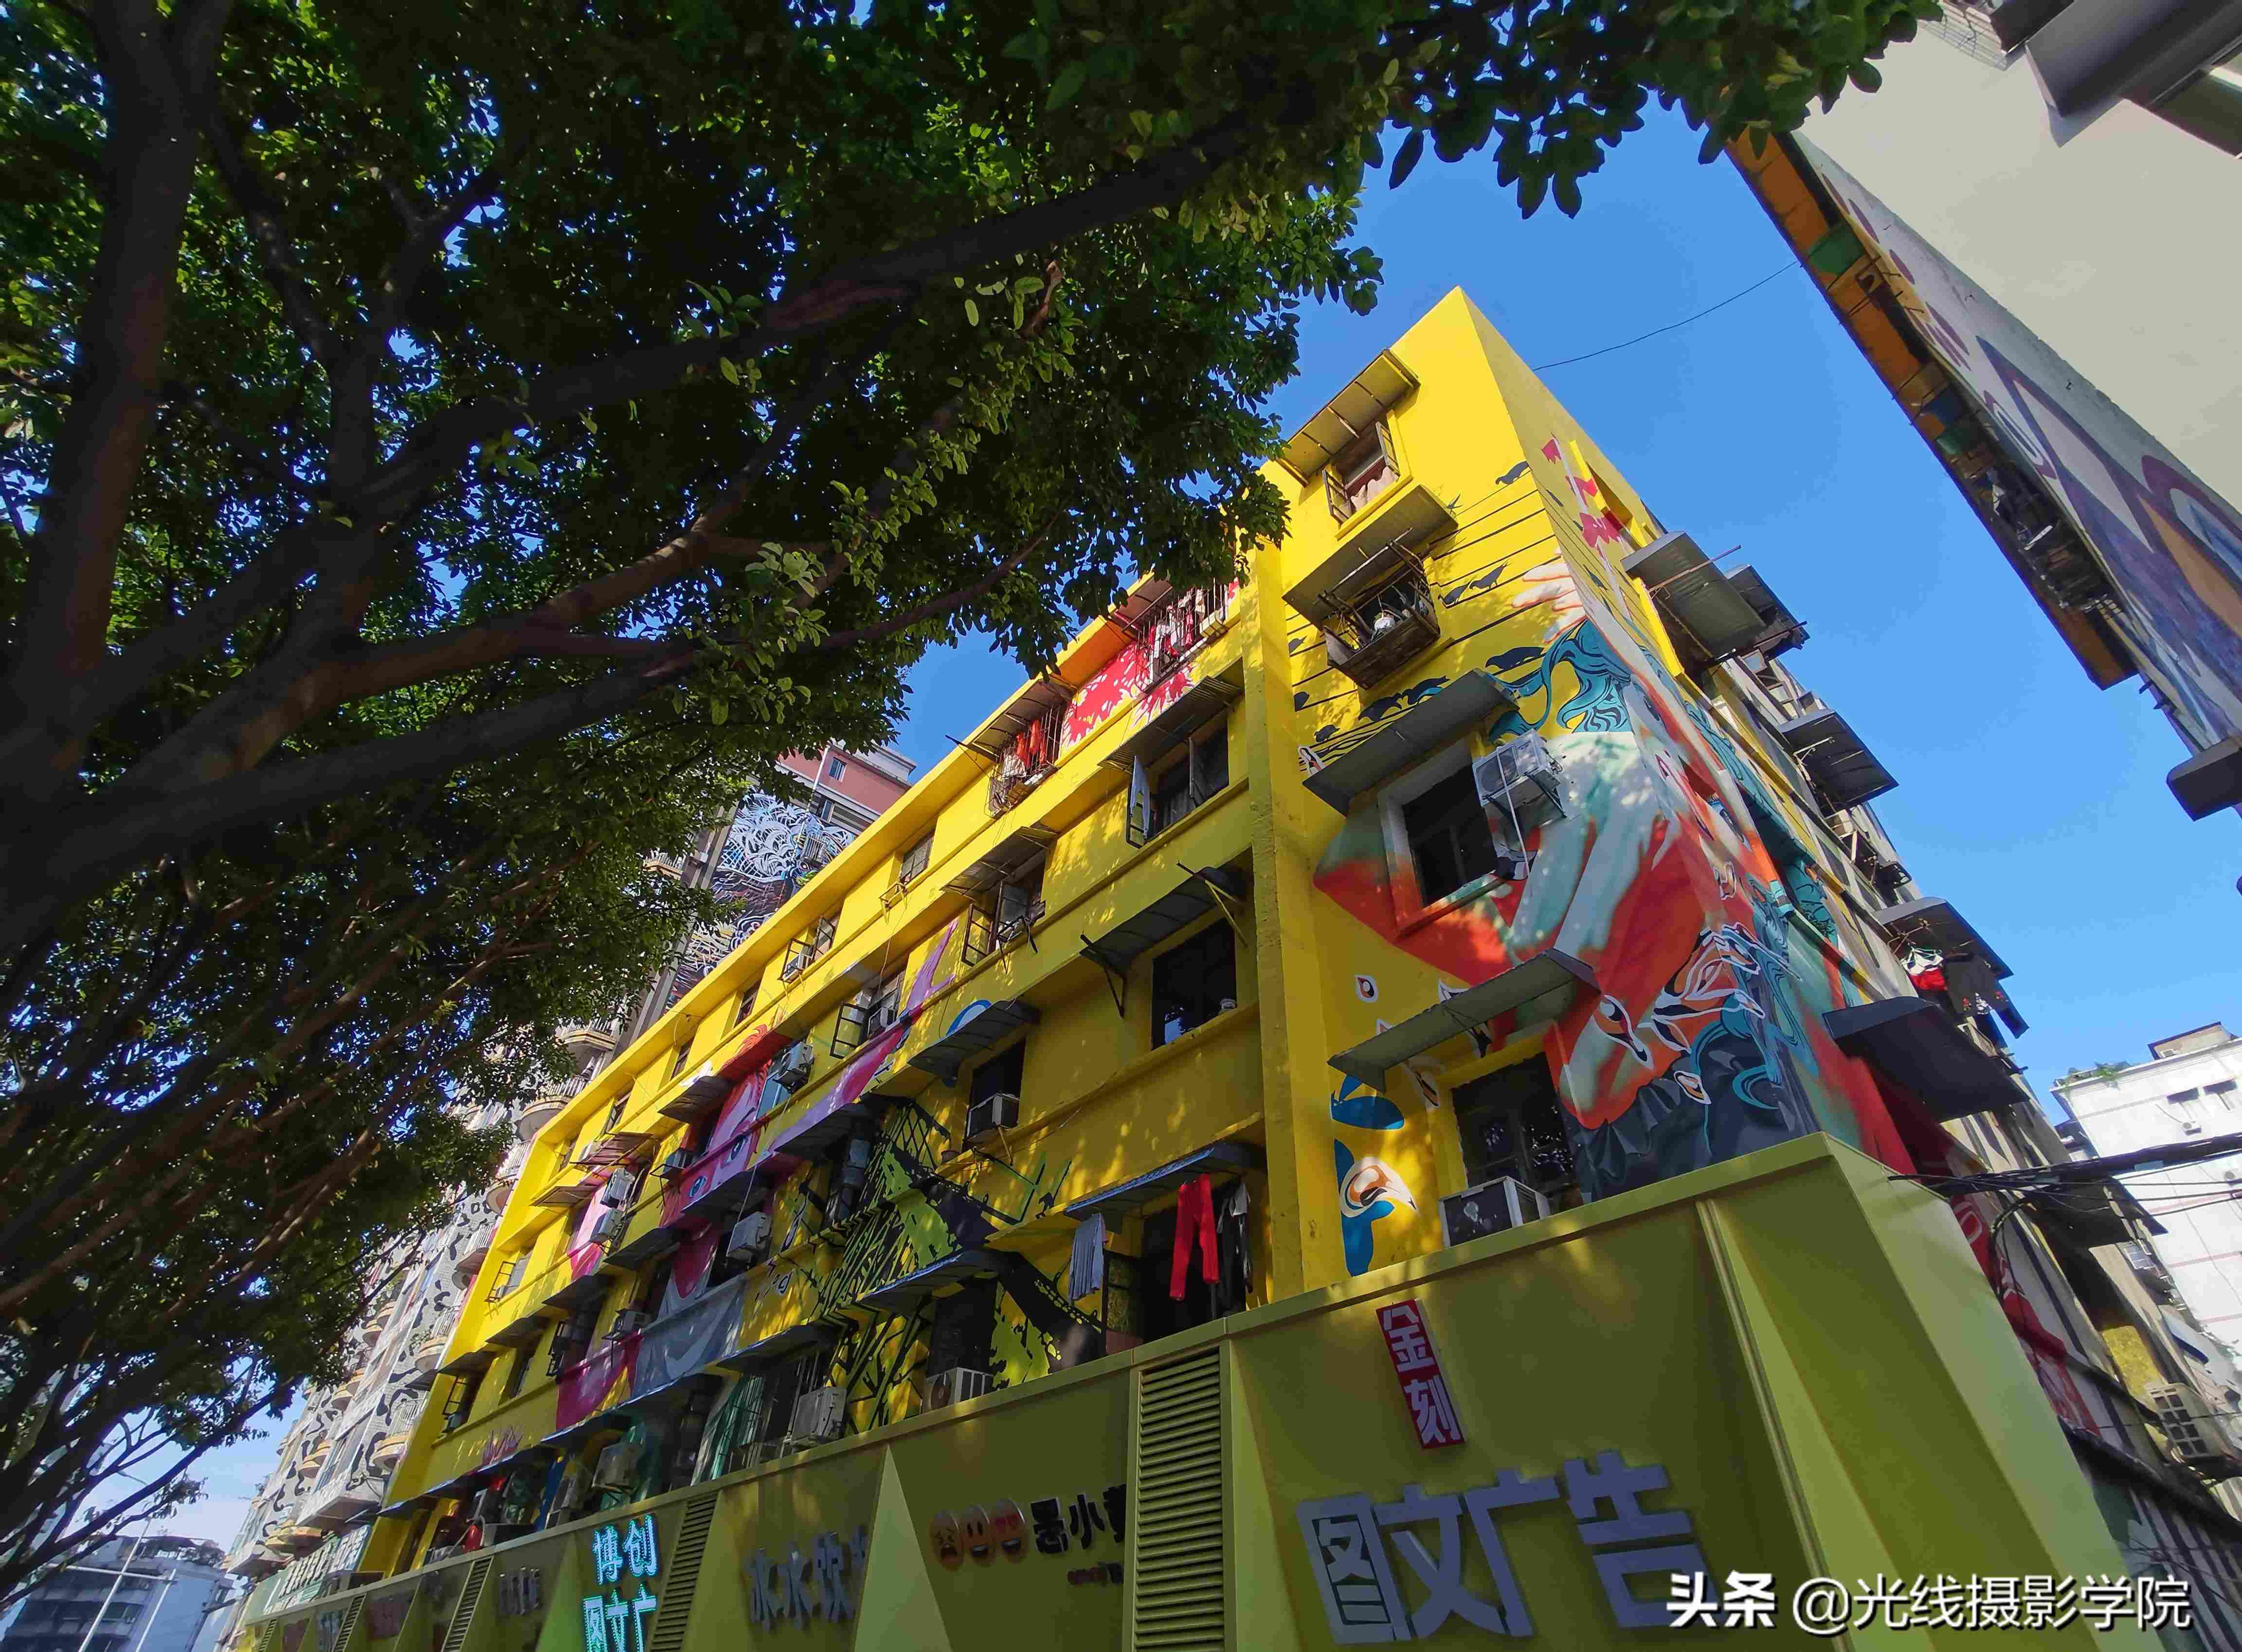 你去过吗？中国最大的涂鸦艺术街区—重庆黄角坪川美涂鸦一条街